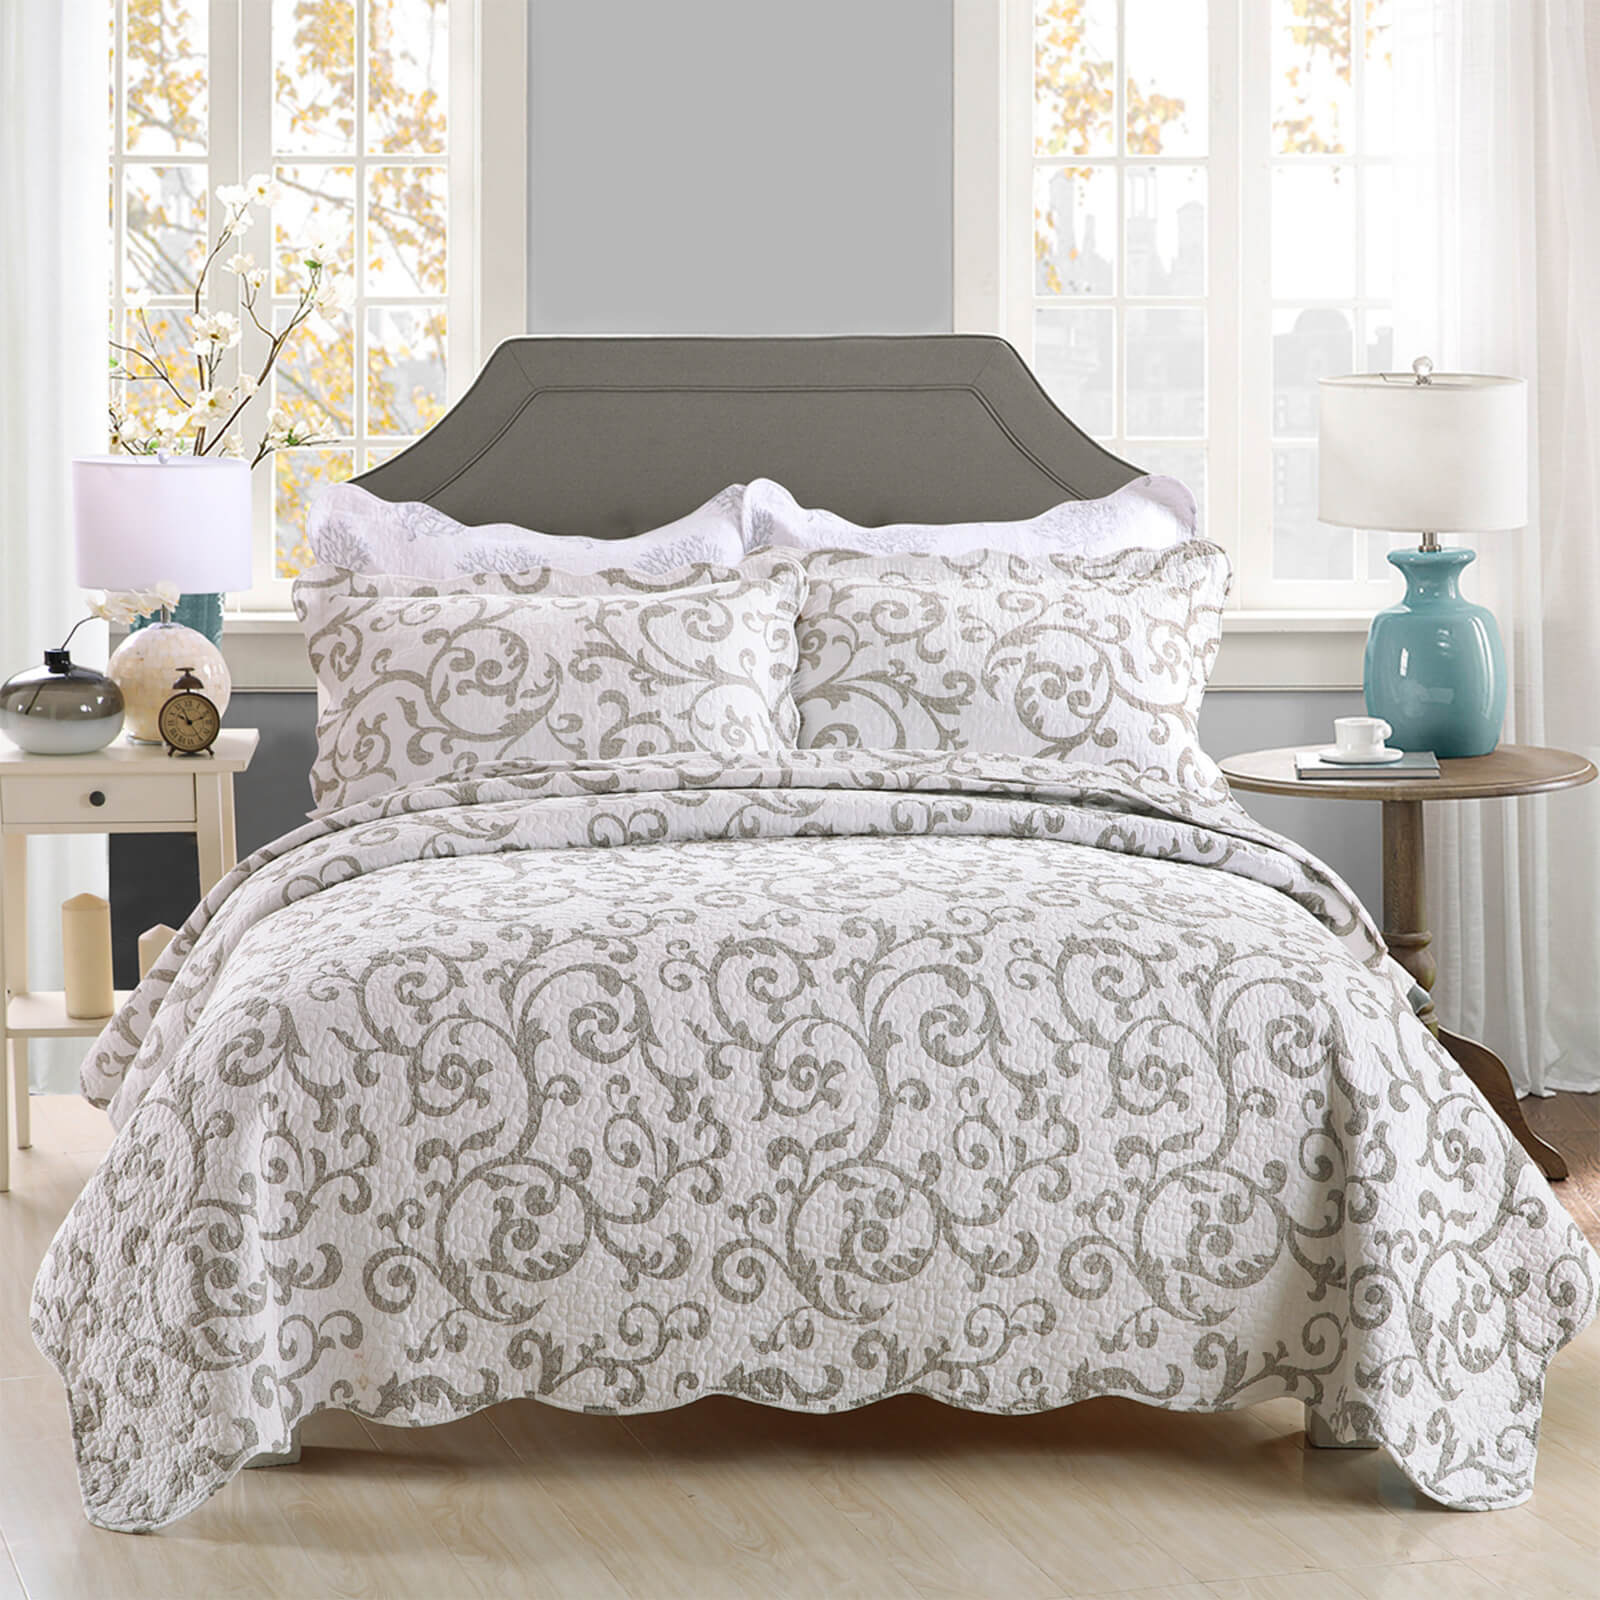 Dream 3-piece quilt bedding set